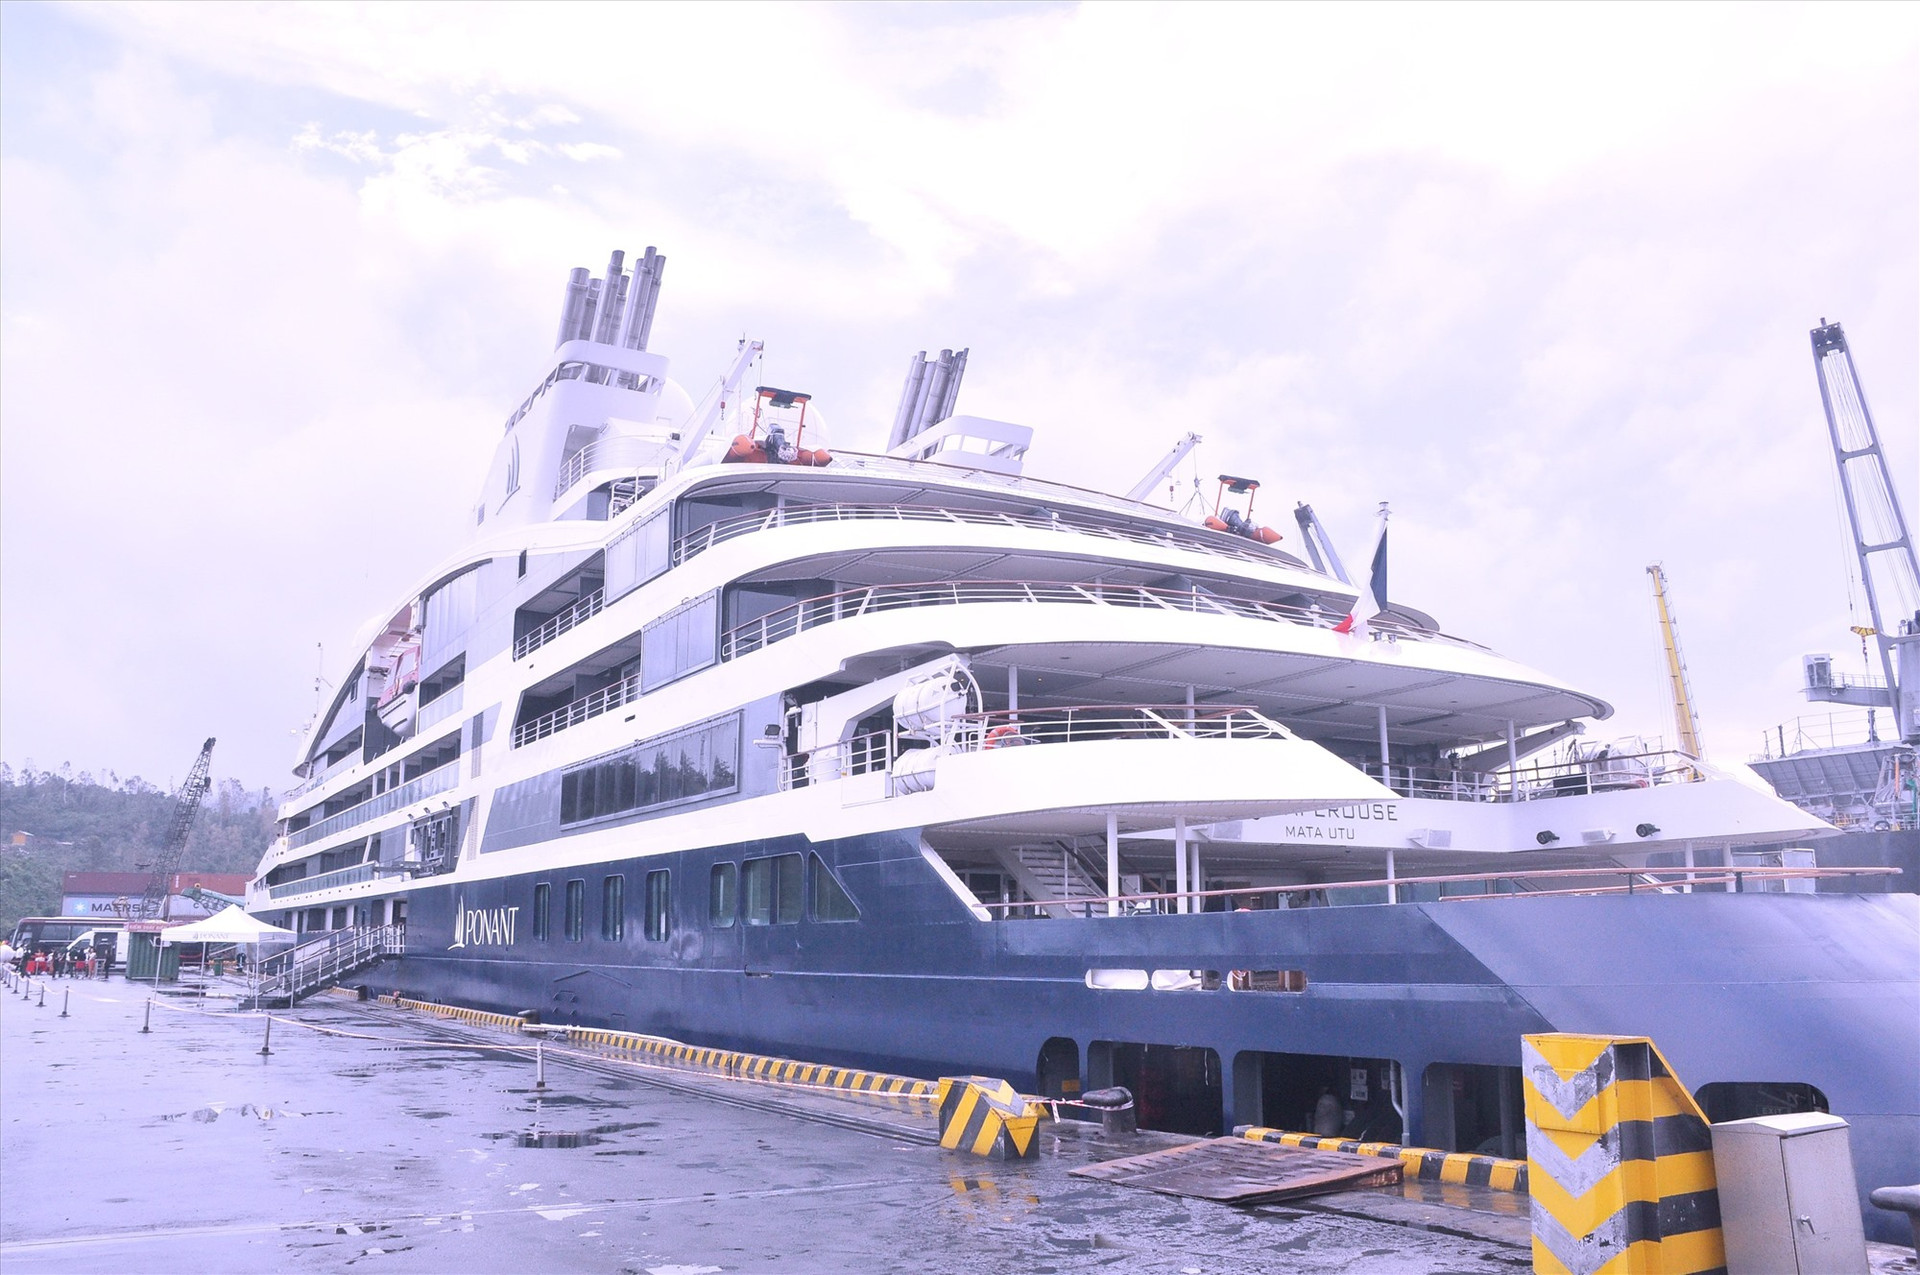 Con tàu Lapérouse hiện đại sẽ có 3 chuyến cập Cảng Đà Nẵng trong tháng 10.2022 để khám phá Đà Nẵng, Hội An và Mỹ Sơn. Ảnh NTB